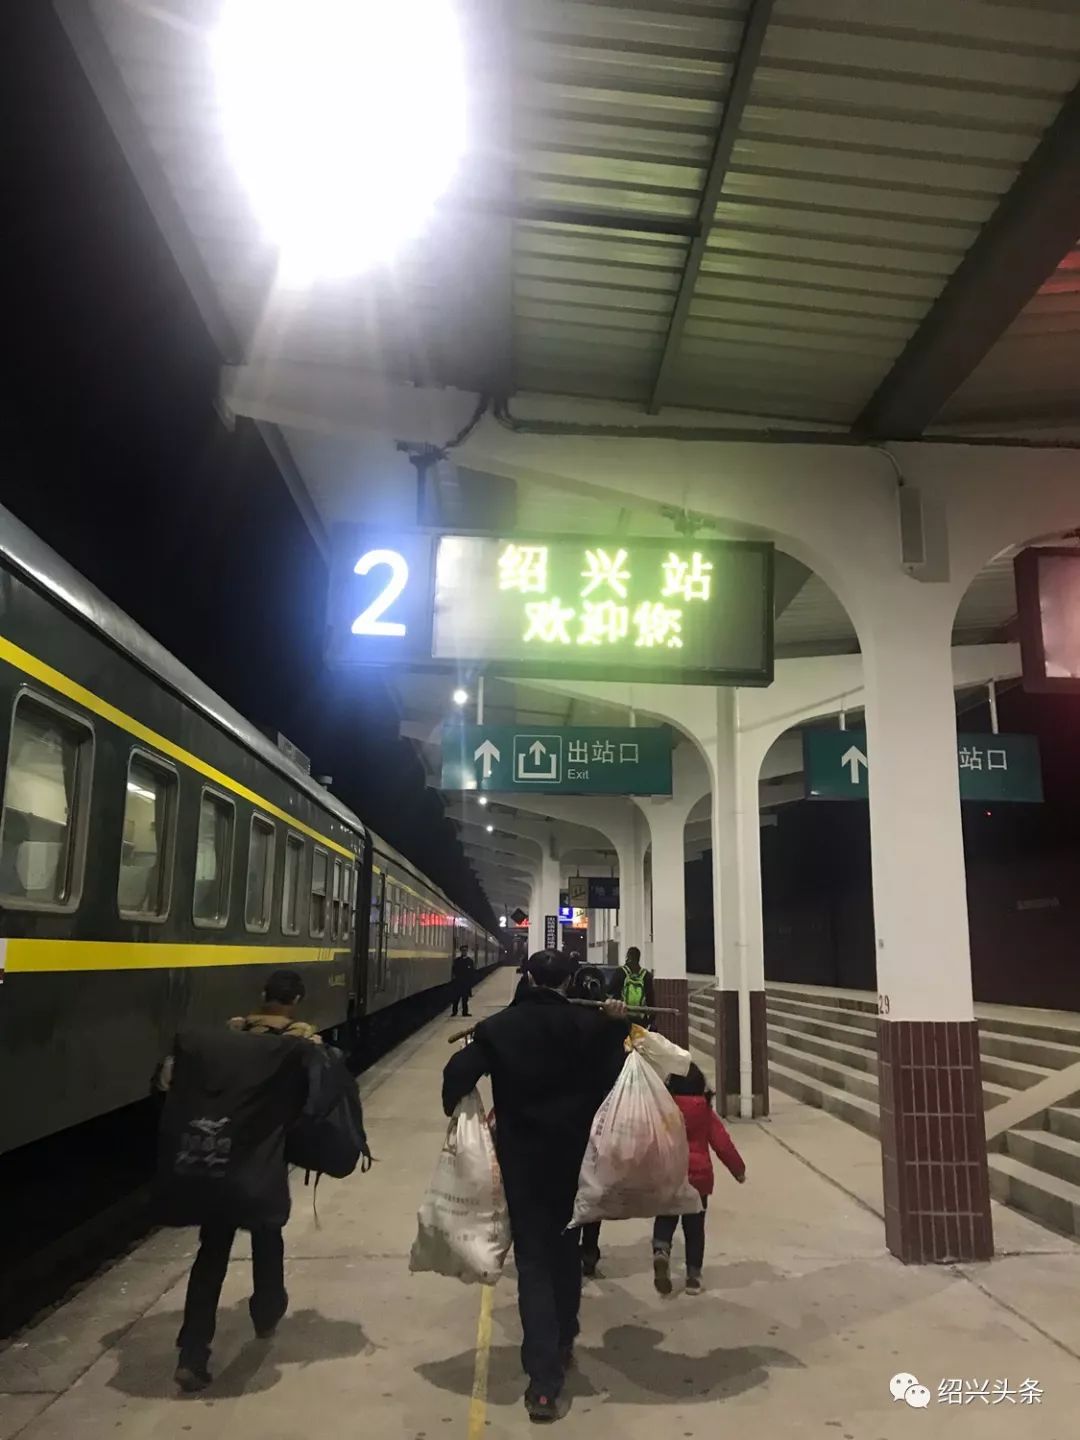 再见,绍兴火车站!